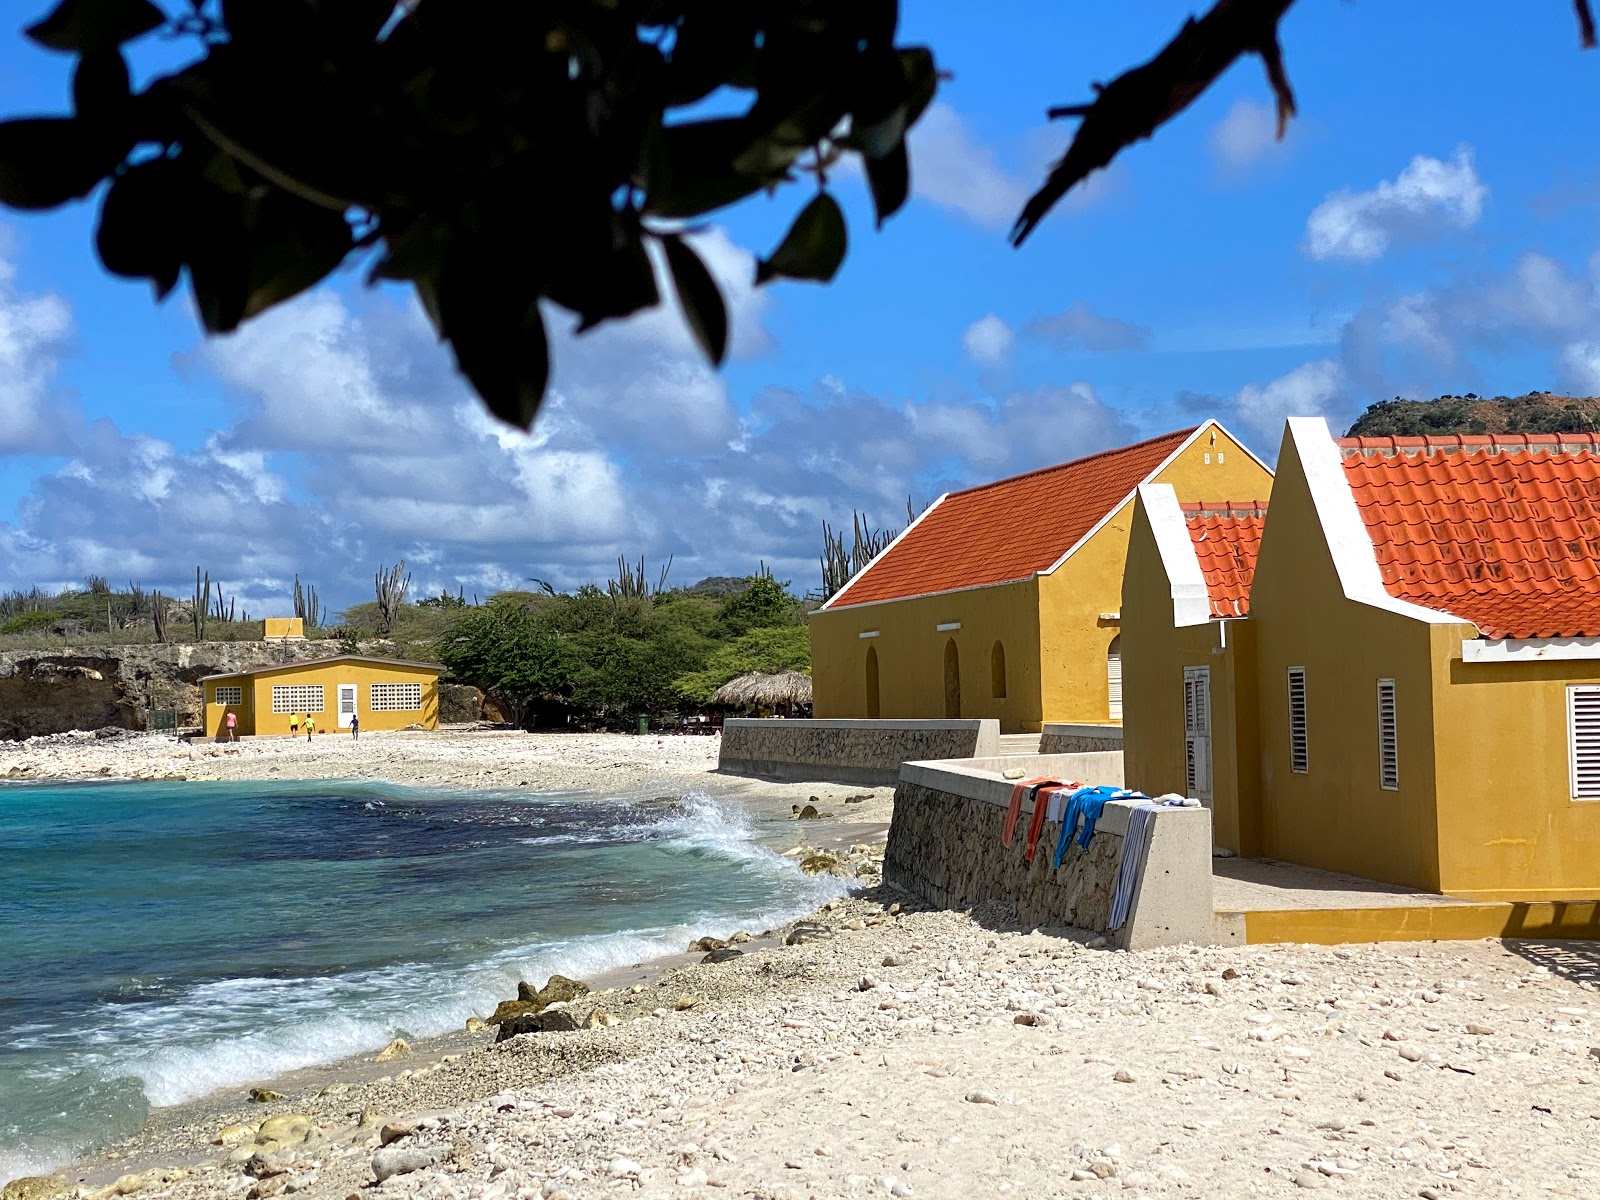 Boca Slagbaai'in fotoğrafı geniş plaj ile birlikte